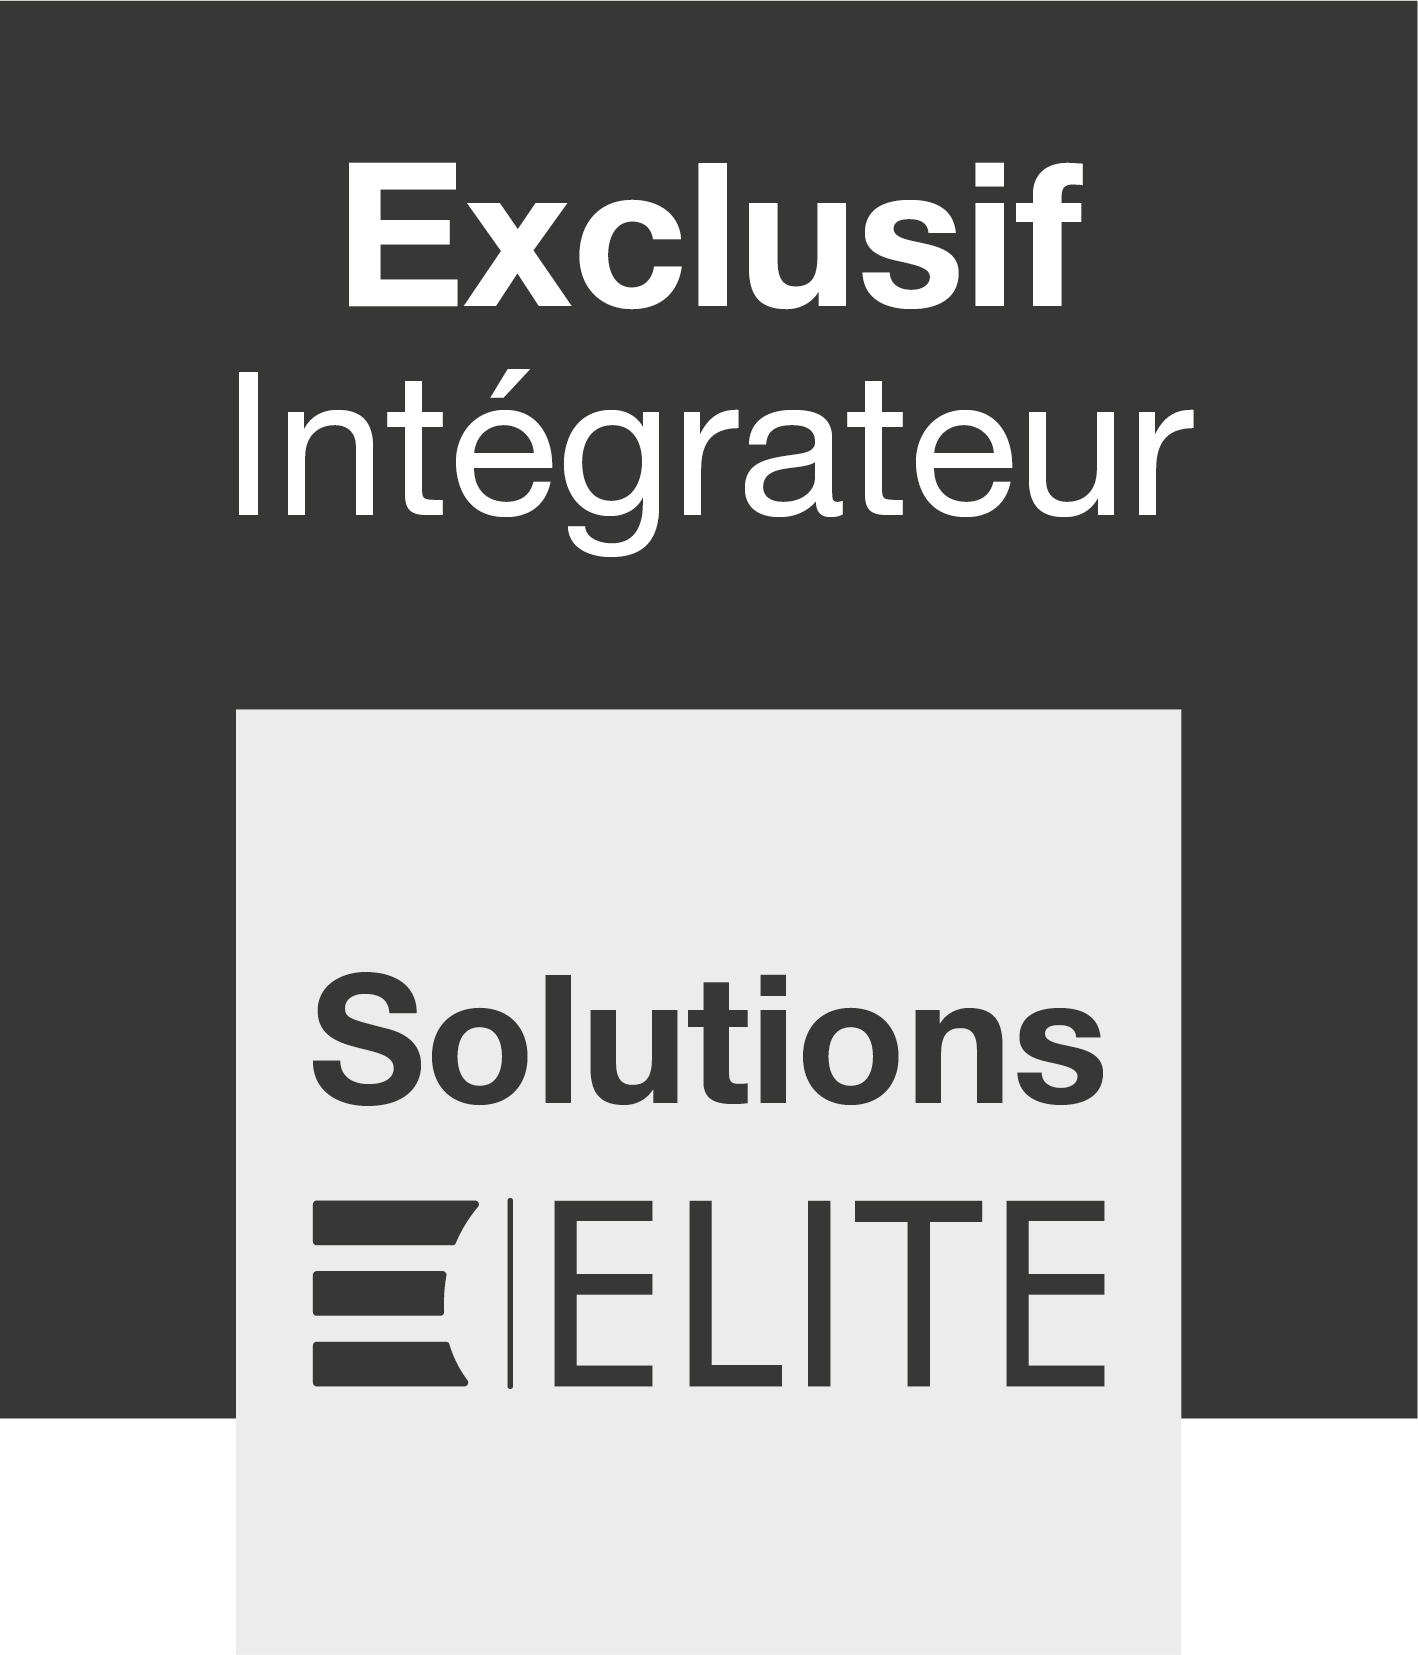 Exclusif Intégrateur Solutions ELITE